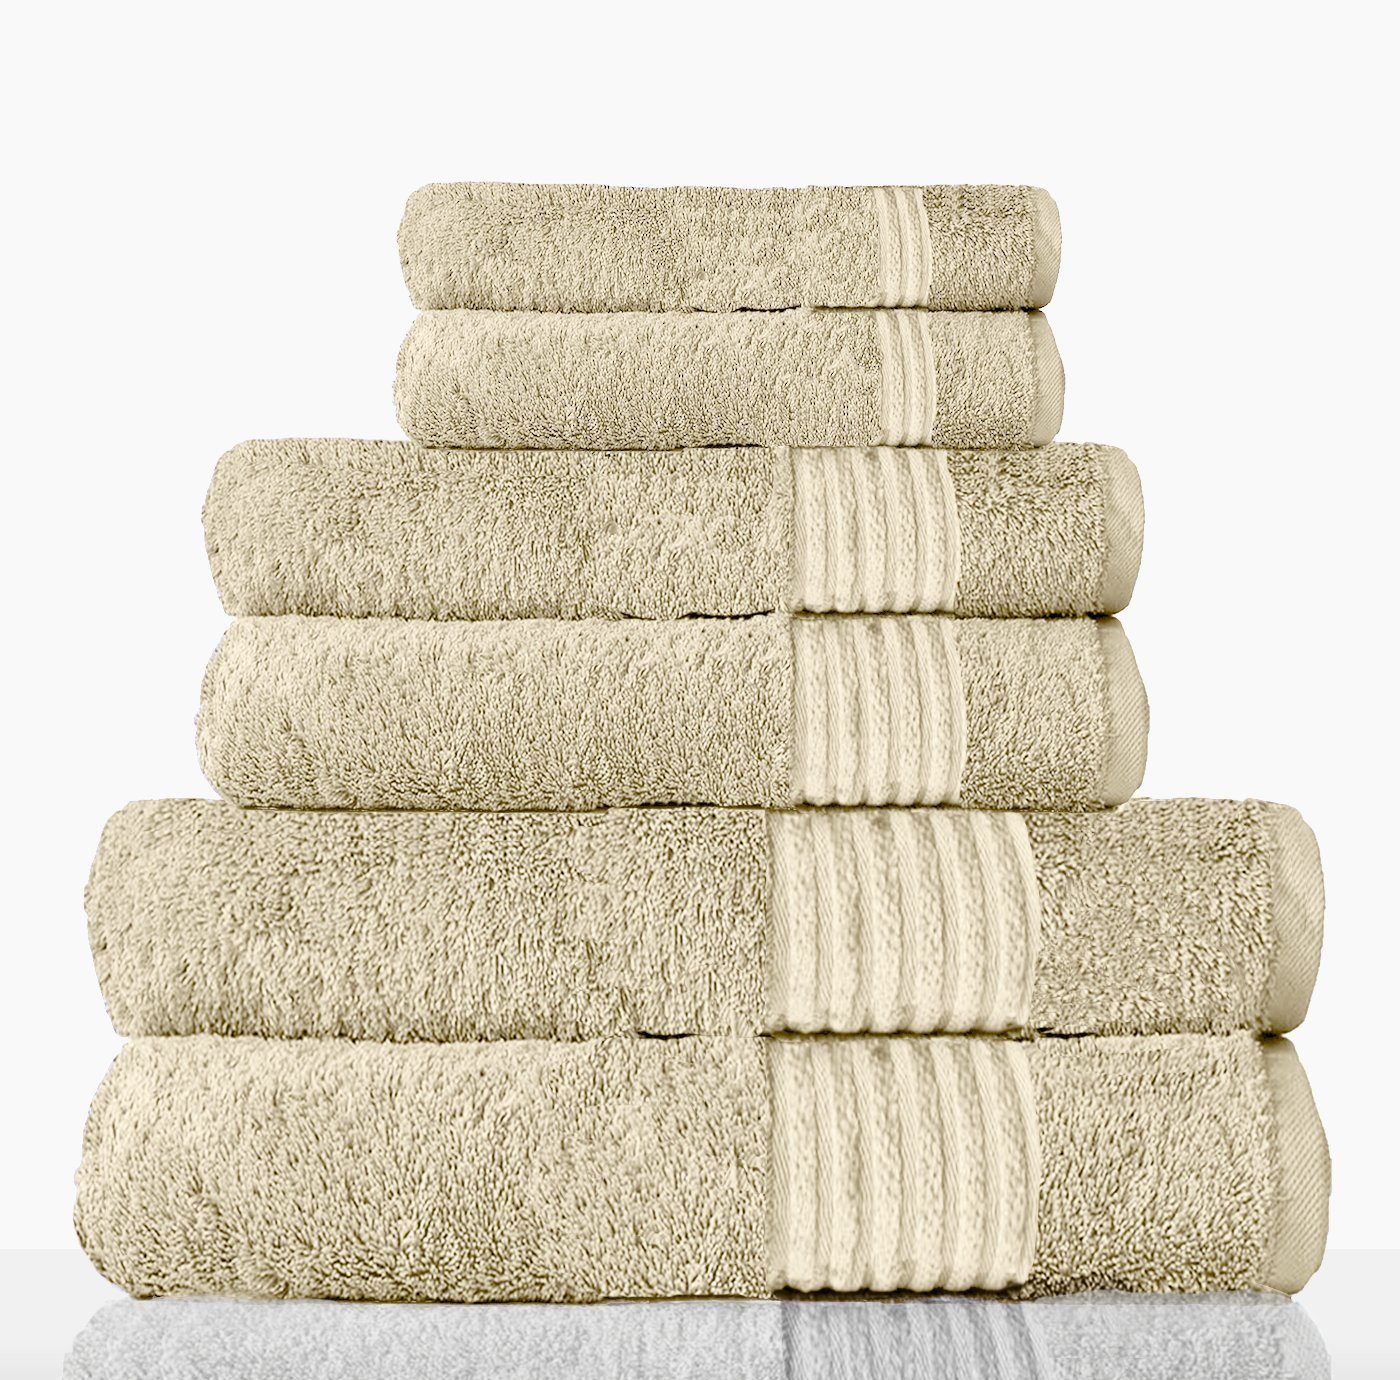 Sitheim-Europe Handtuch Set NEFERTITI Handtücher ägyptischer Creme 6-teiliges, premium ägyptische 100% Baumwolle aus Baumwolle (6-tlg), Baumwolle, 100% ägyptische